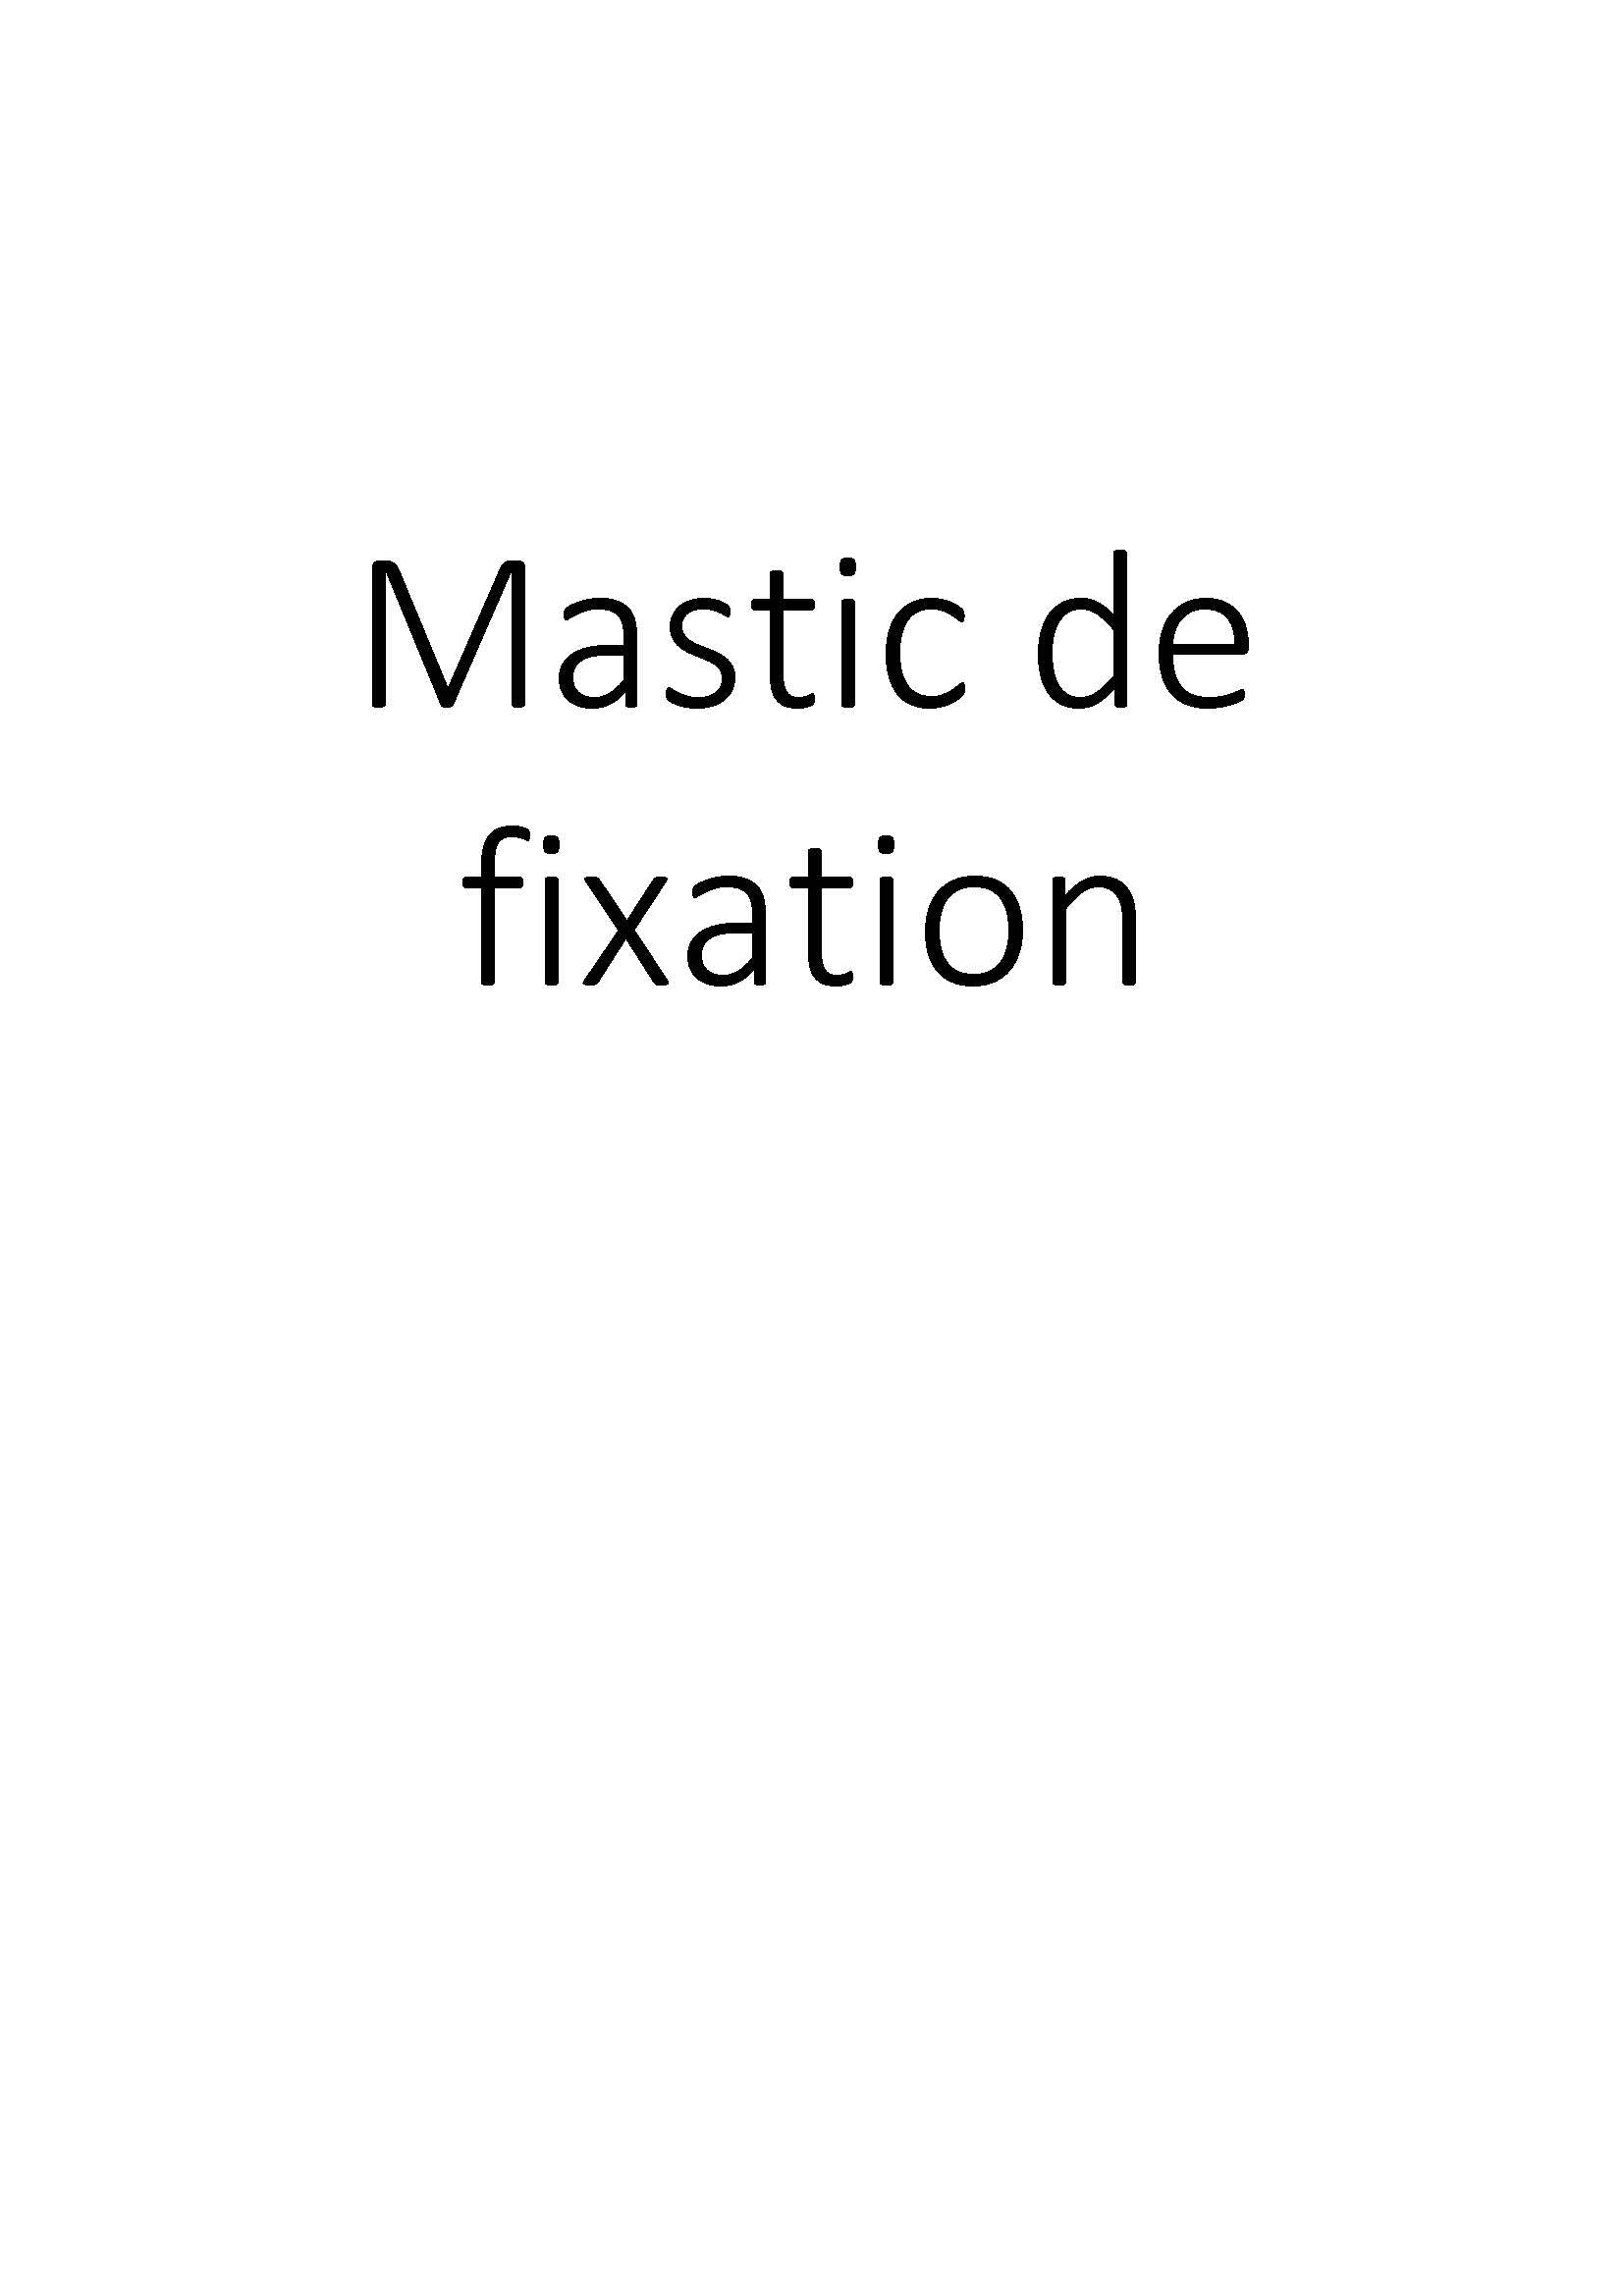 Mastic de fixation clicktofournisseur.com